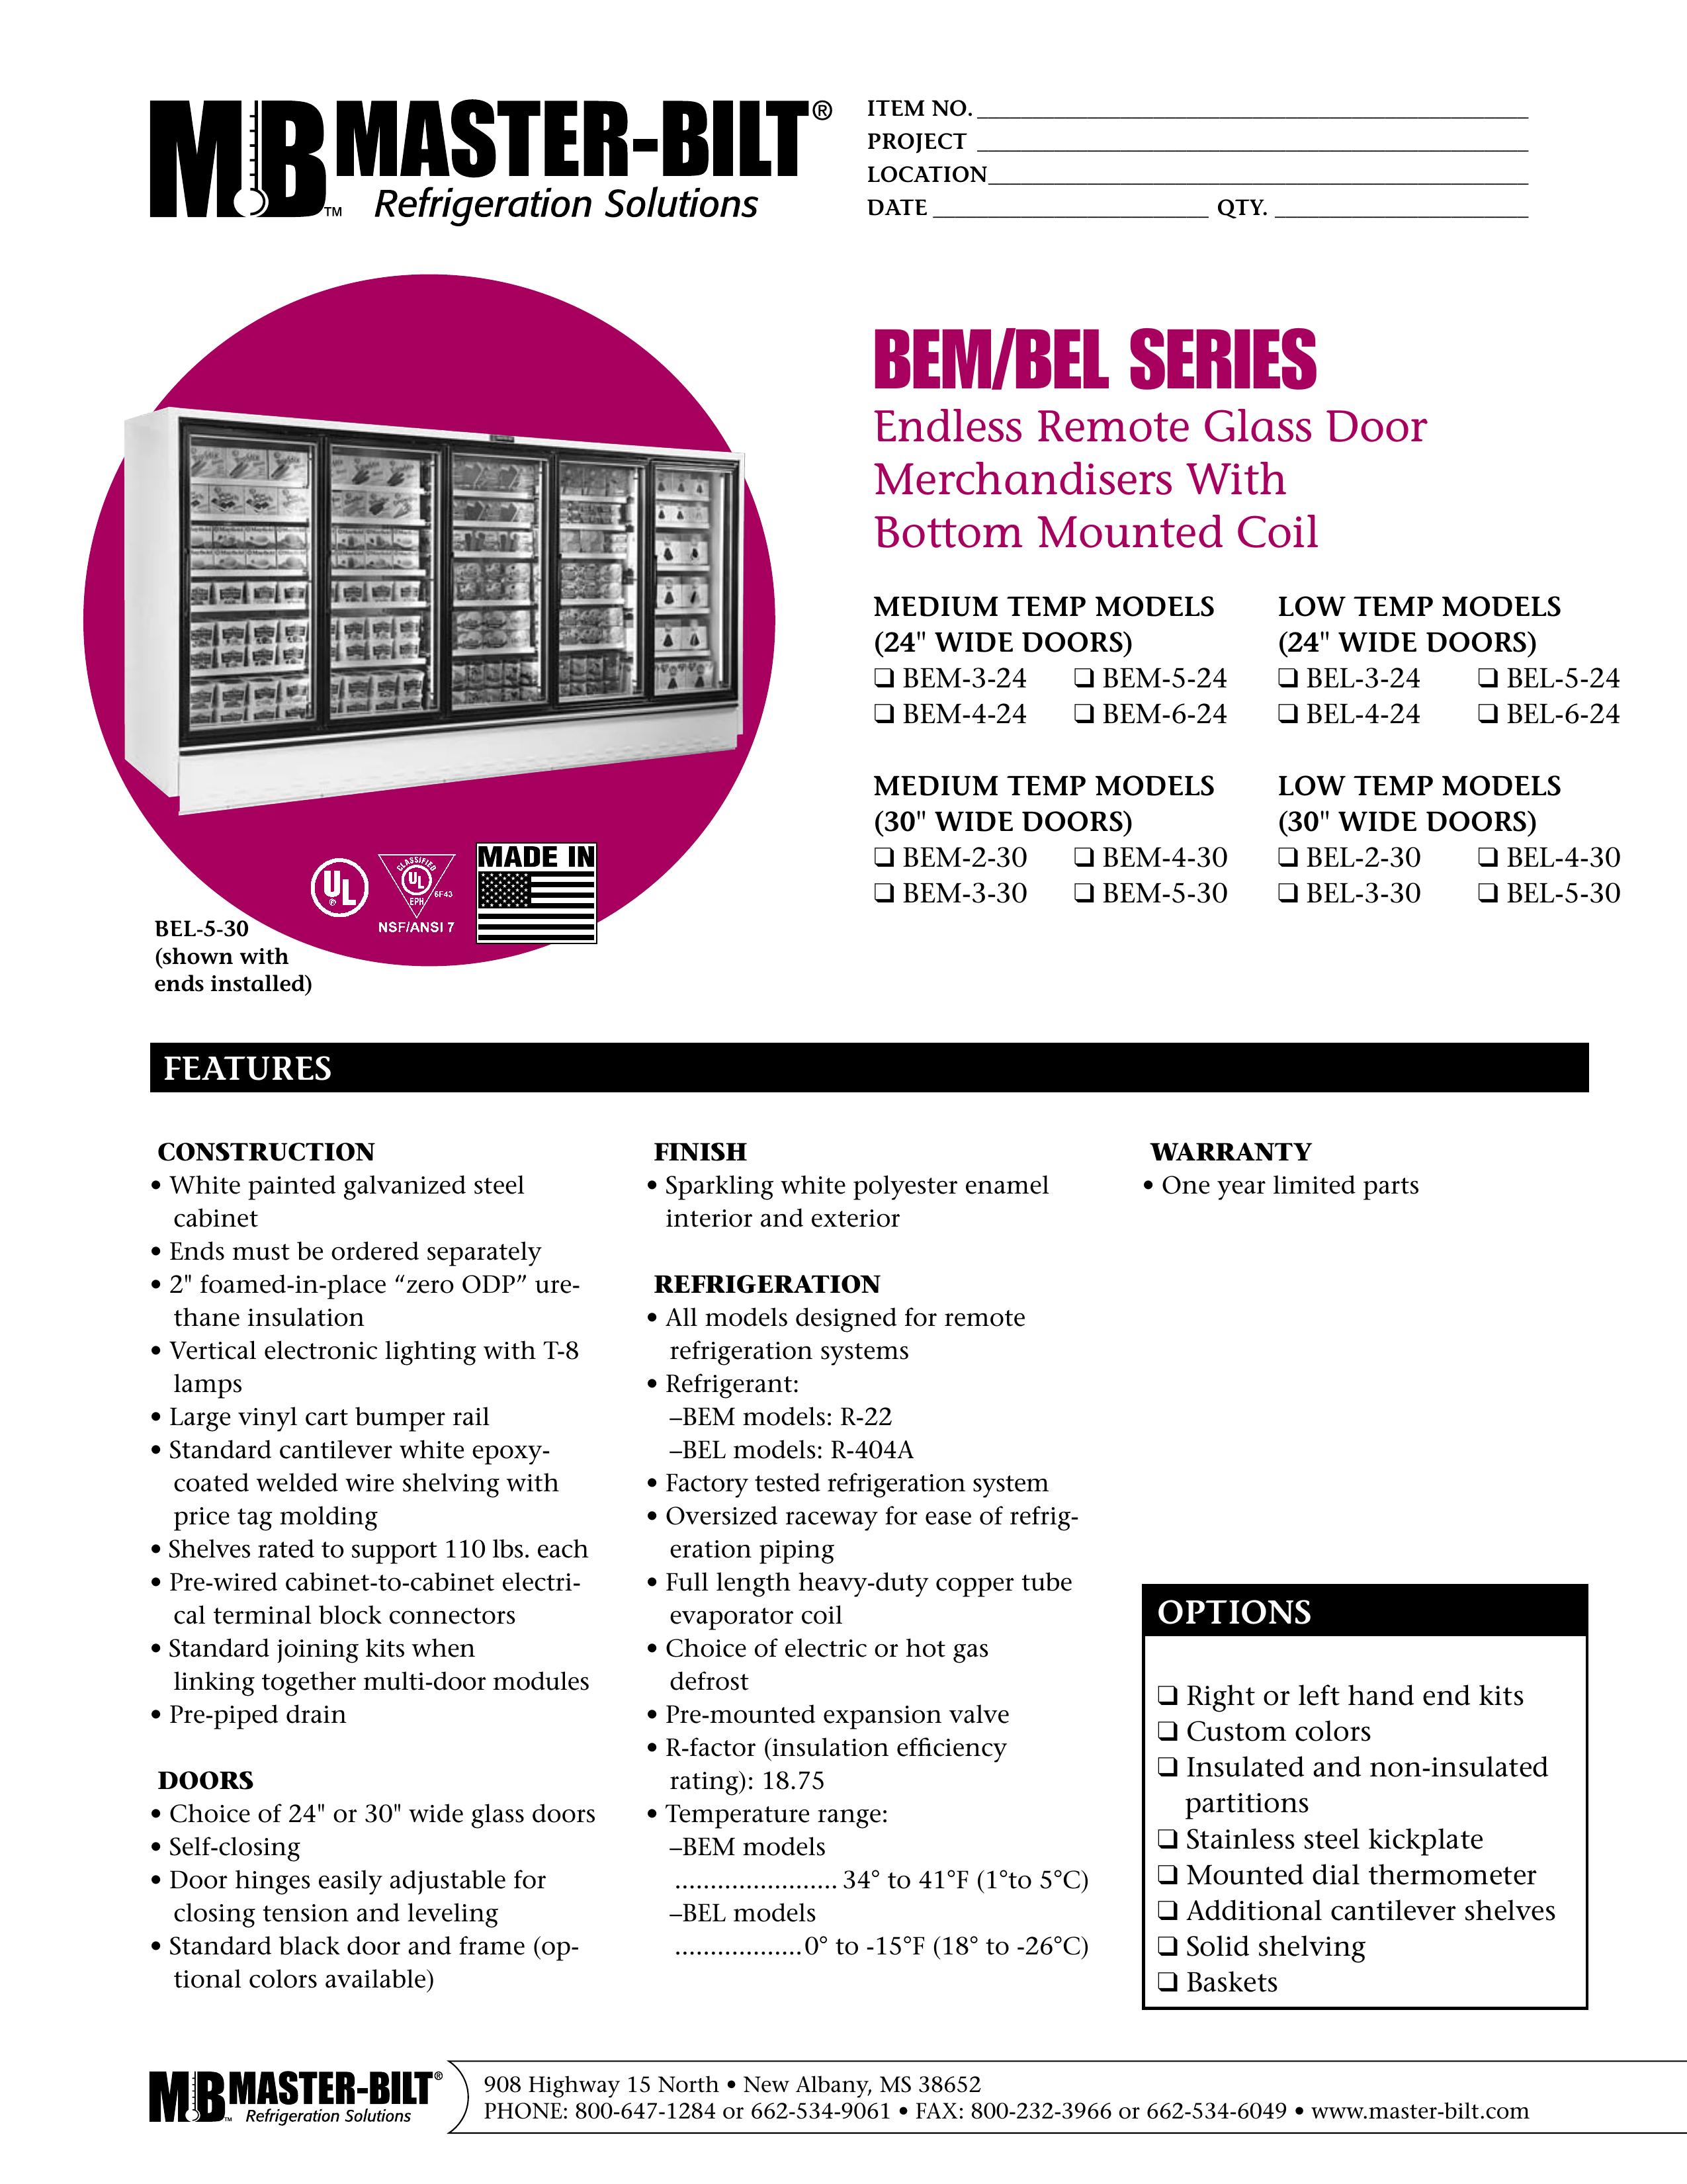 Master Bilt BEM-6-24 Refrigerator User Manual